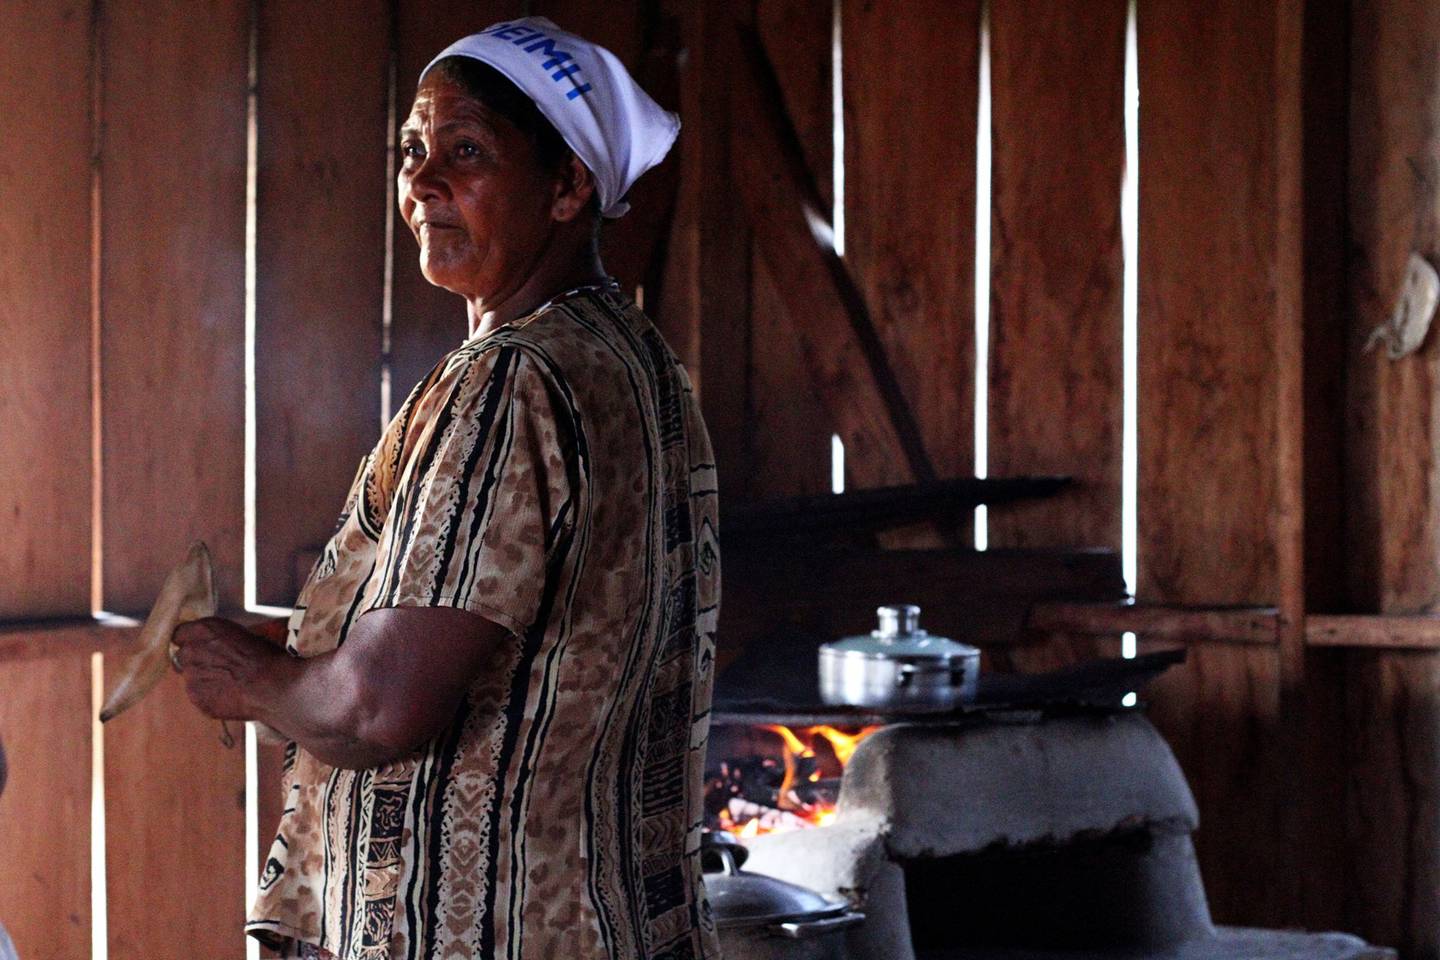 Una mujer en el área rural de Honduras.